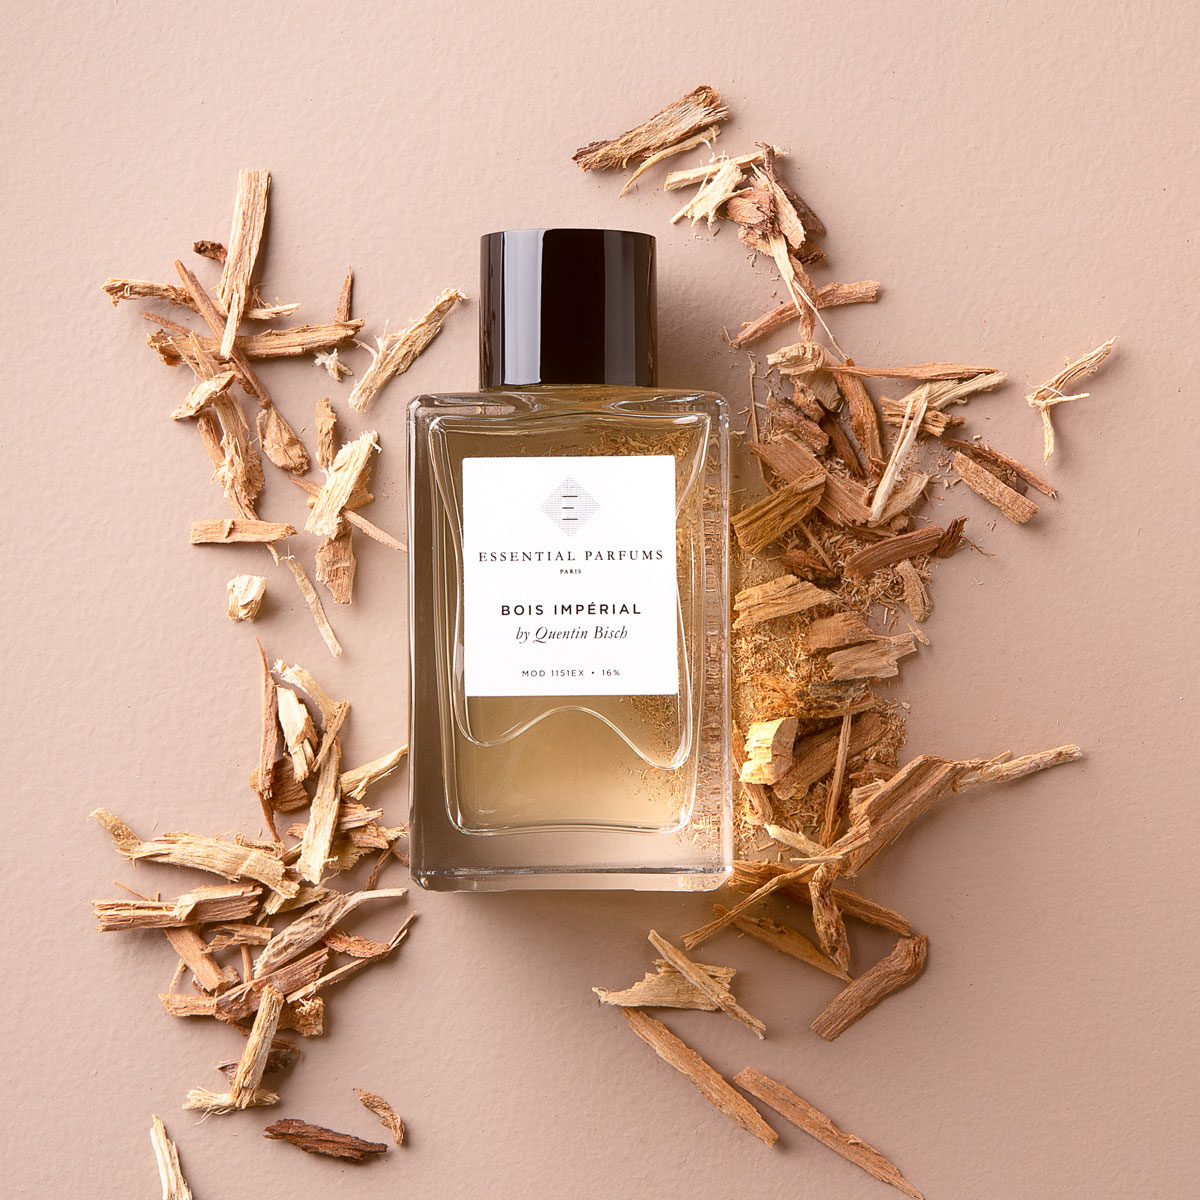 Bois-imperial-essential-parfums-produit-3.jpg